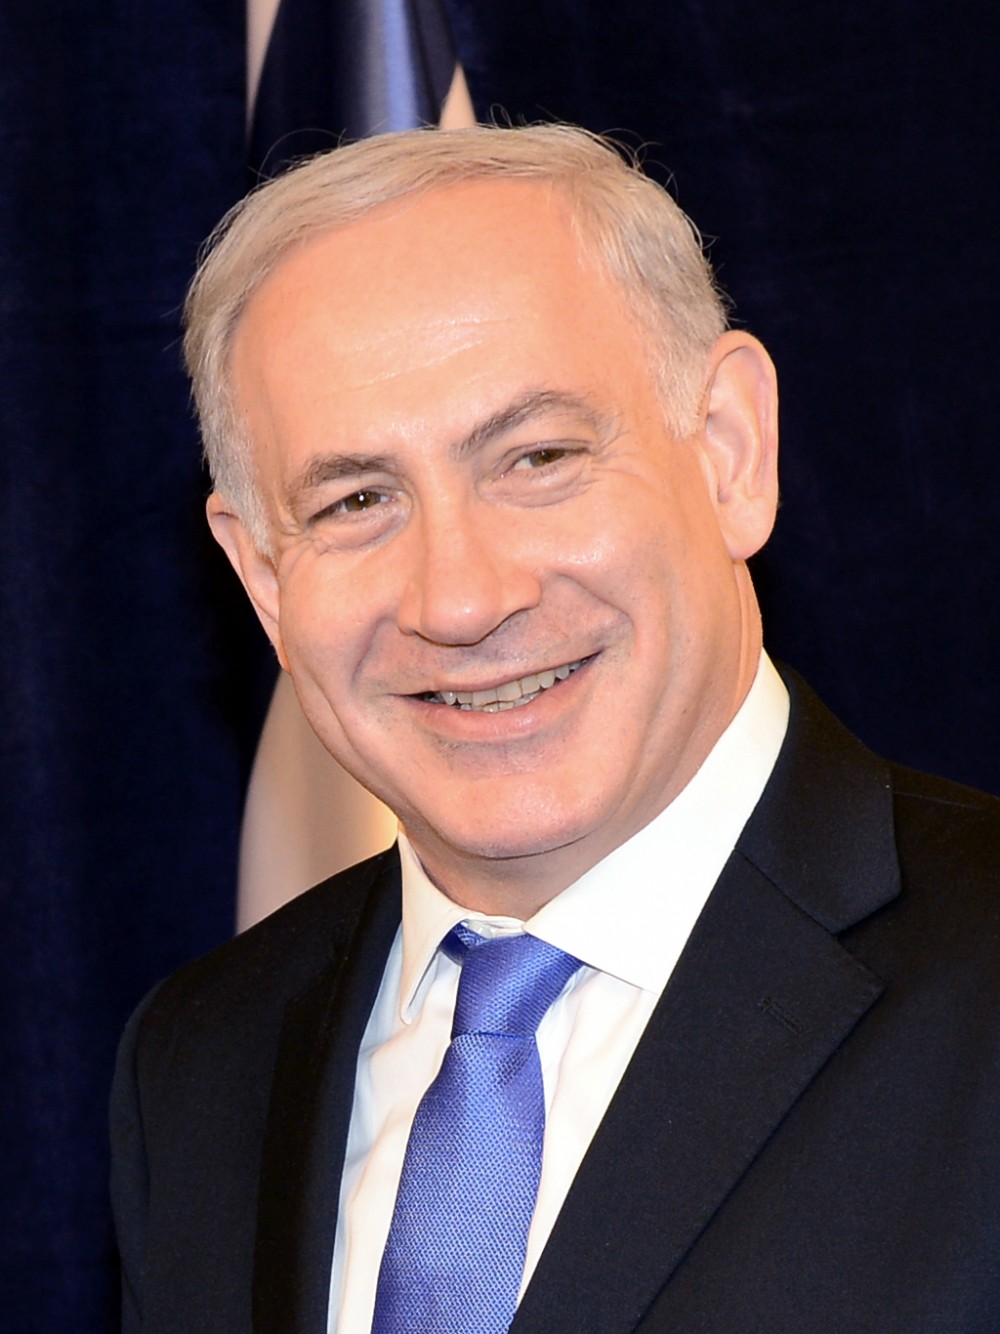 इजरायलमा नेतान्याहू पाँचौ पटक प्रधानमन्त्री बन्दै